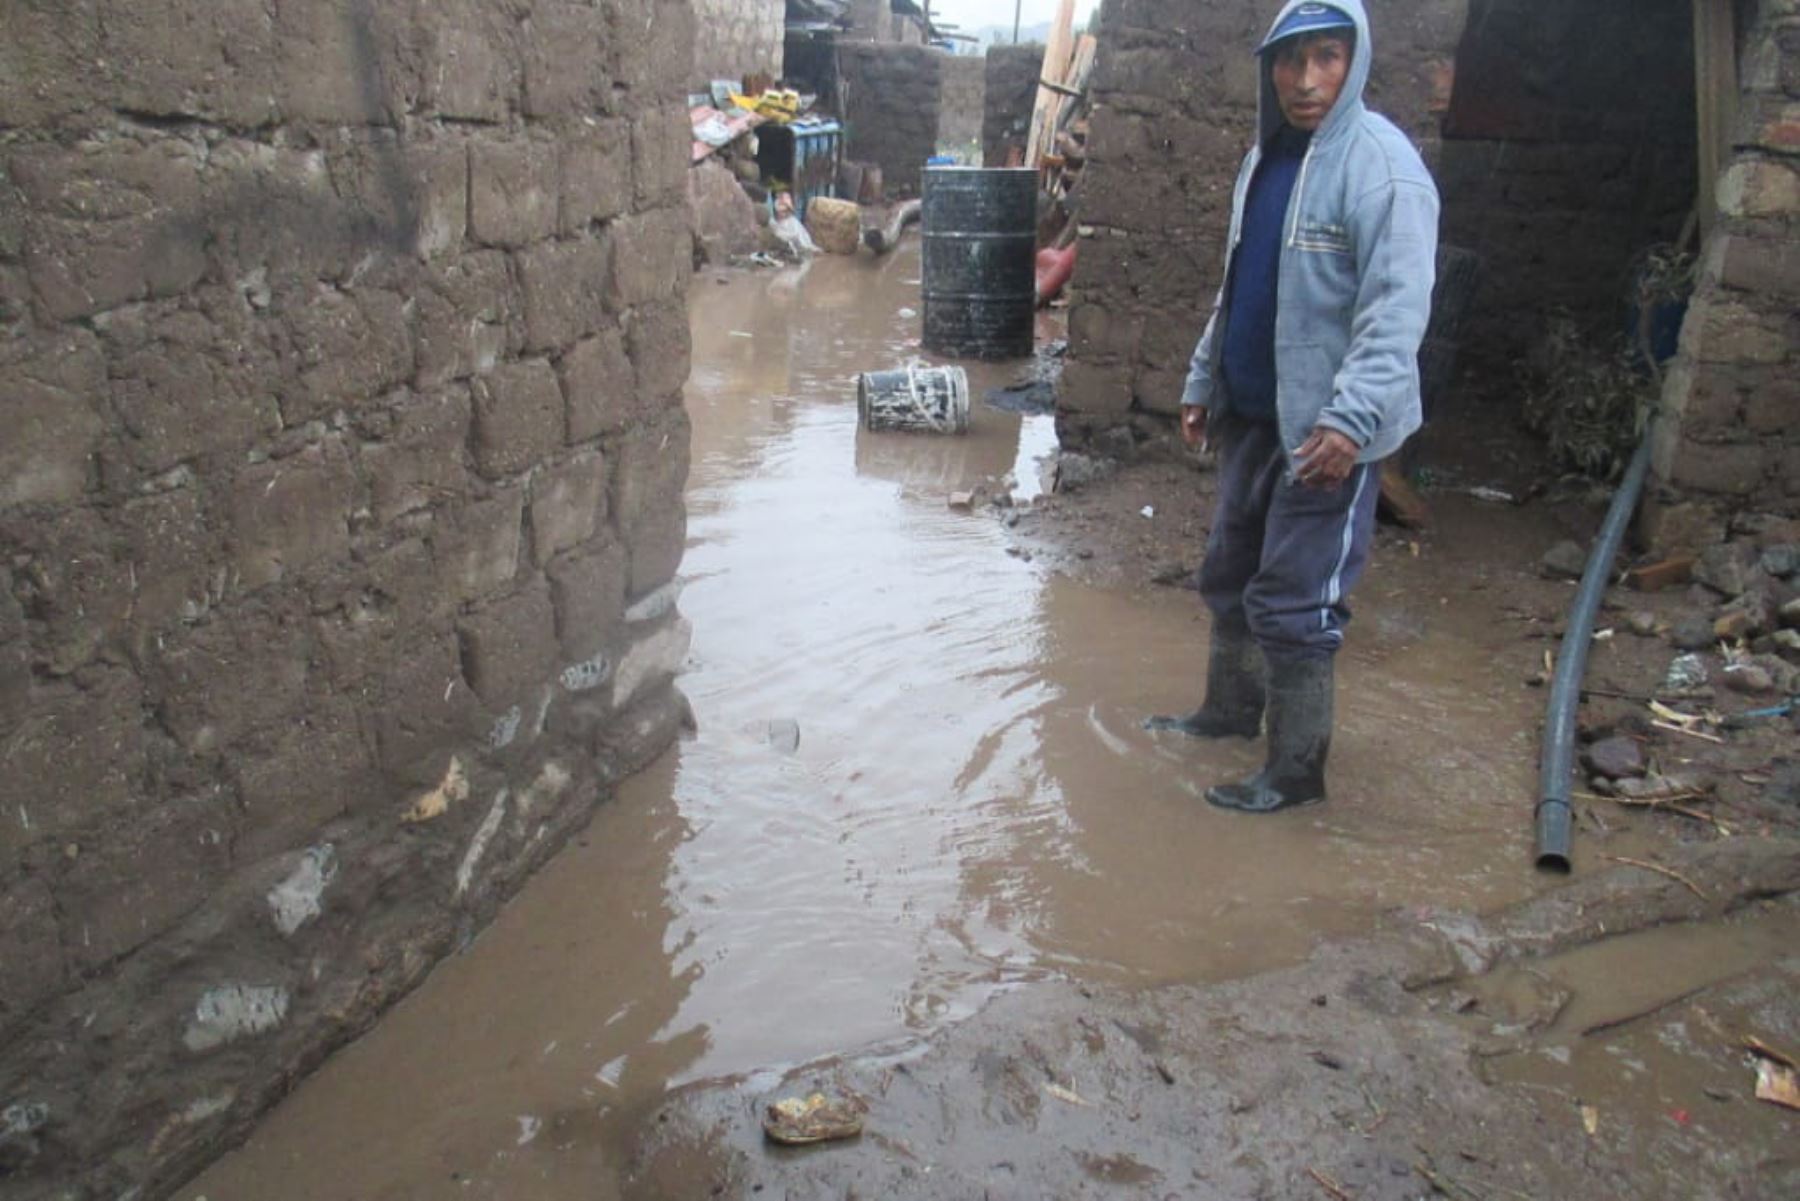 Lluvias y granizada afectan a unas 50 viviendas en provincia de Caylloma, en Arequipa.